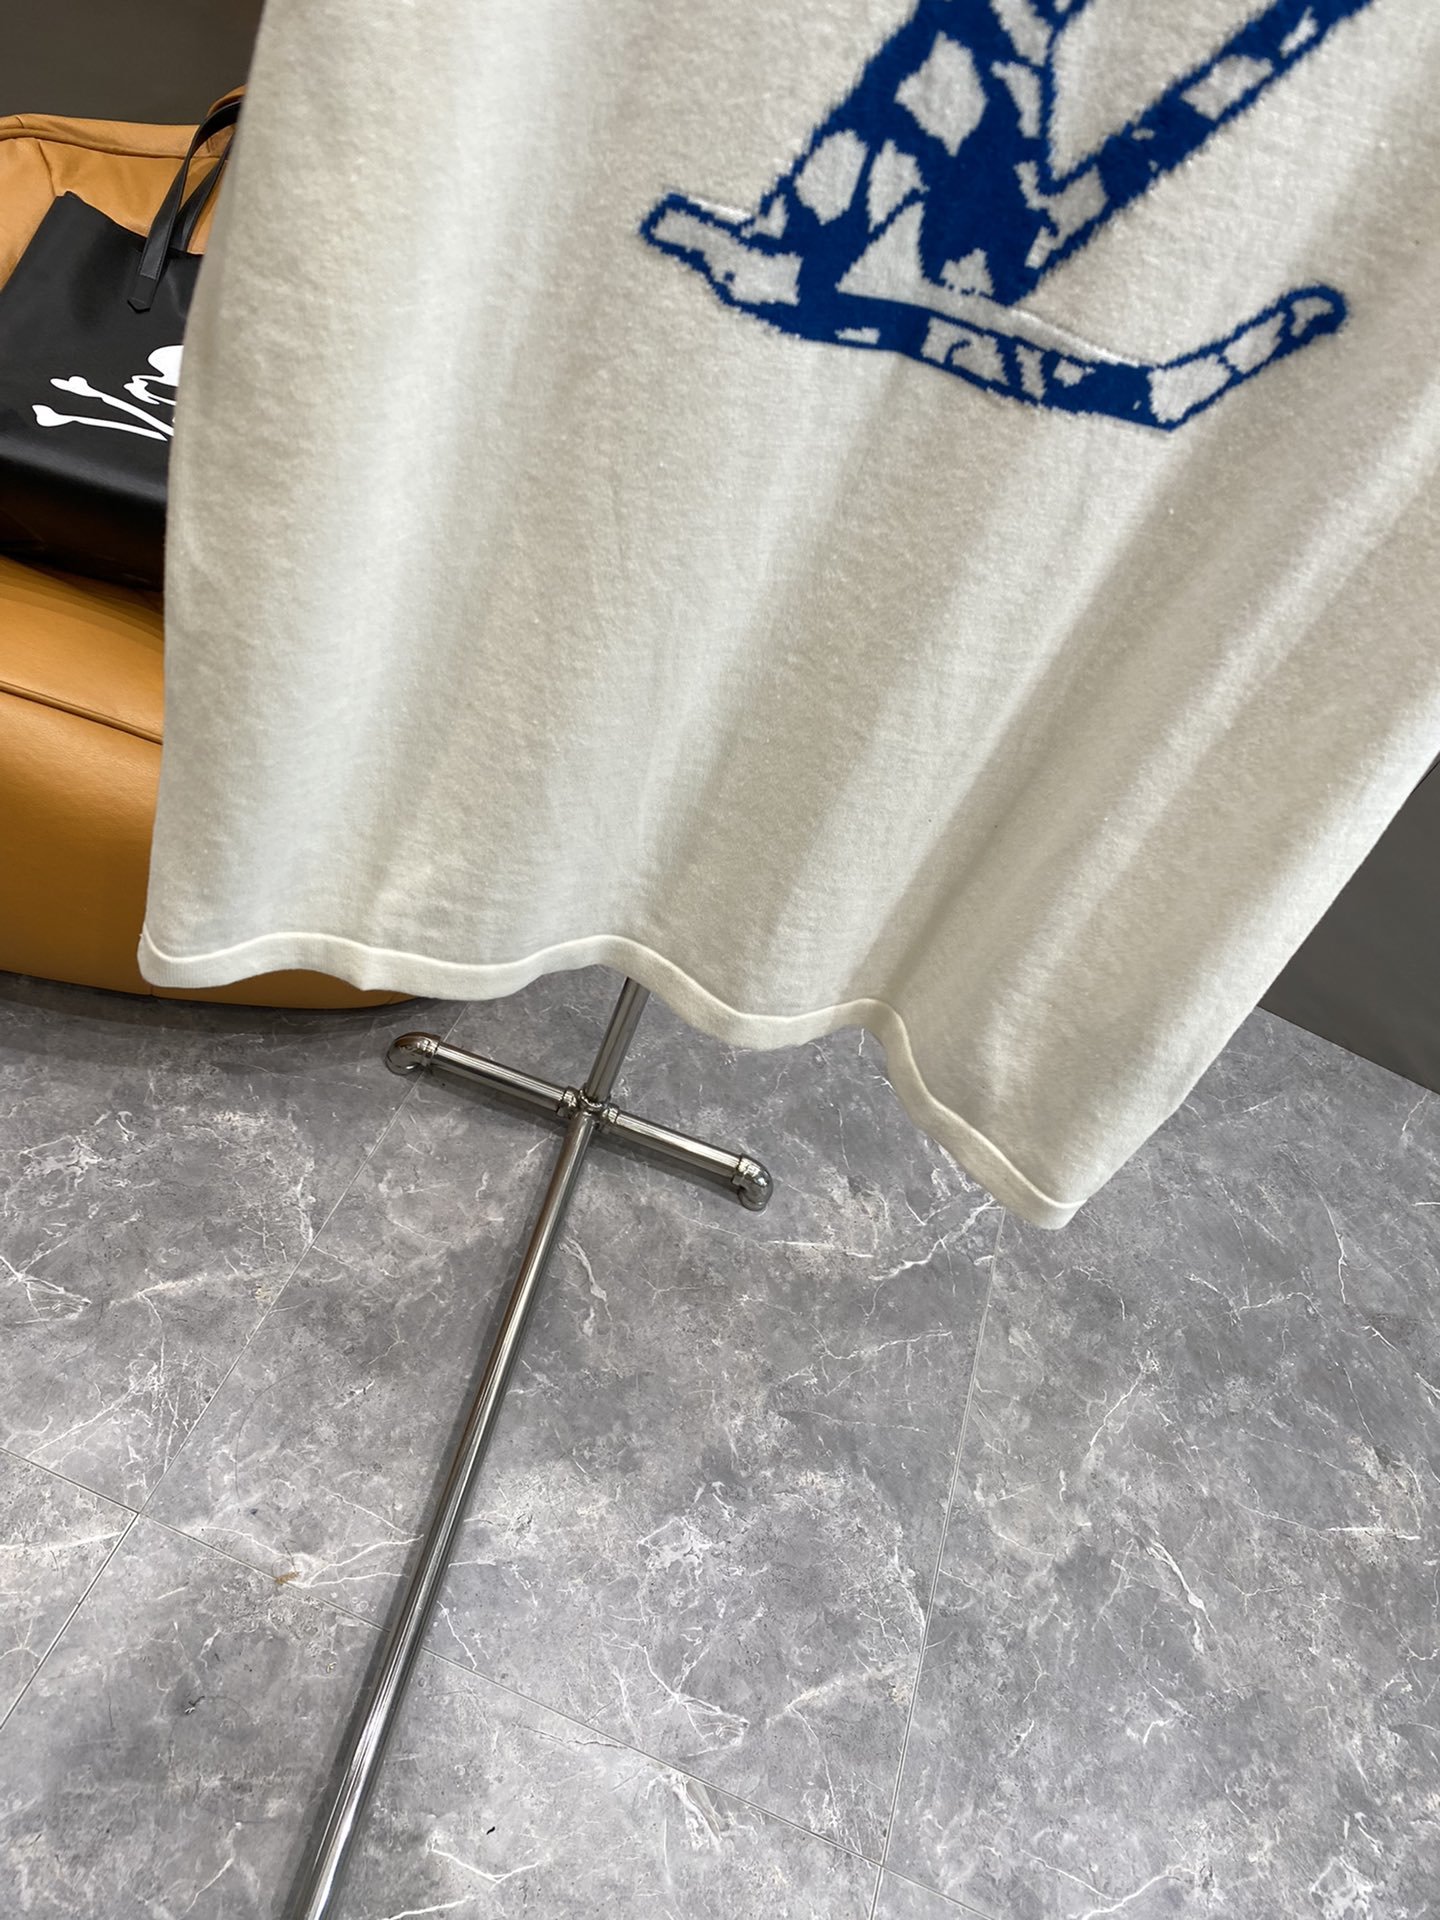 驴家24ss新款短袖棉质圆领上衣将路易威登及LV标志重新演绎为赛车标志并融合于嵌花针织面料以对比鲜明的颜